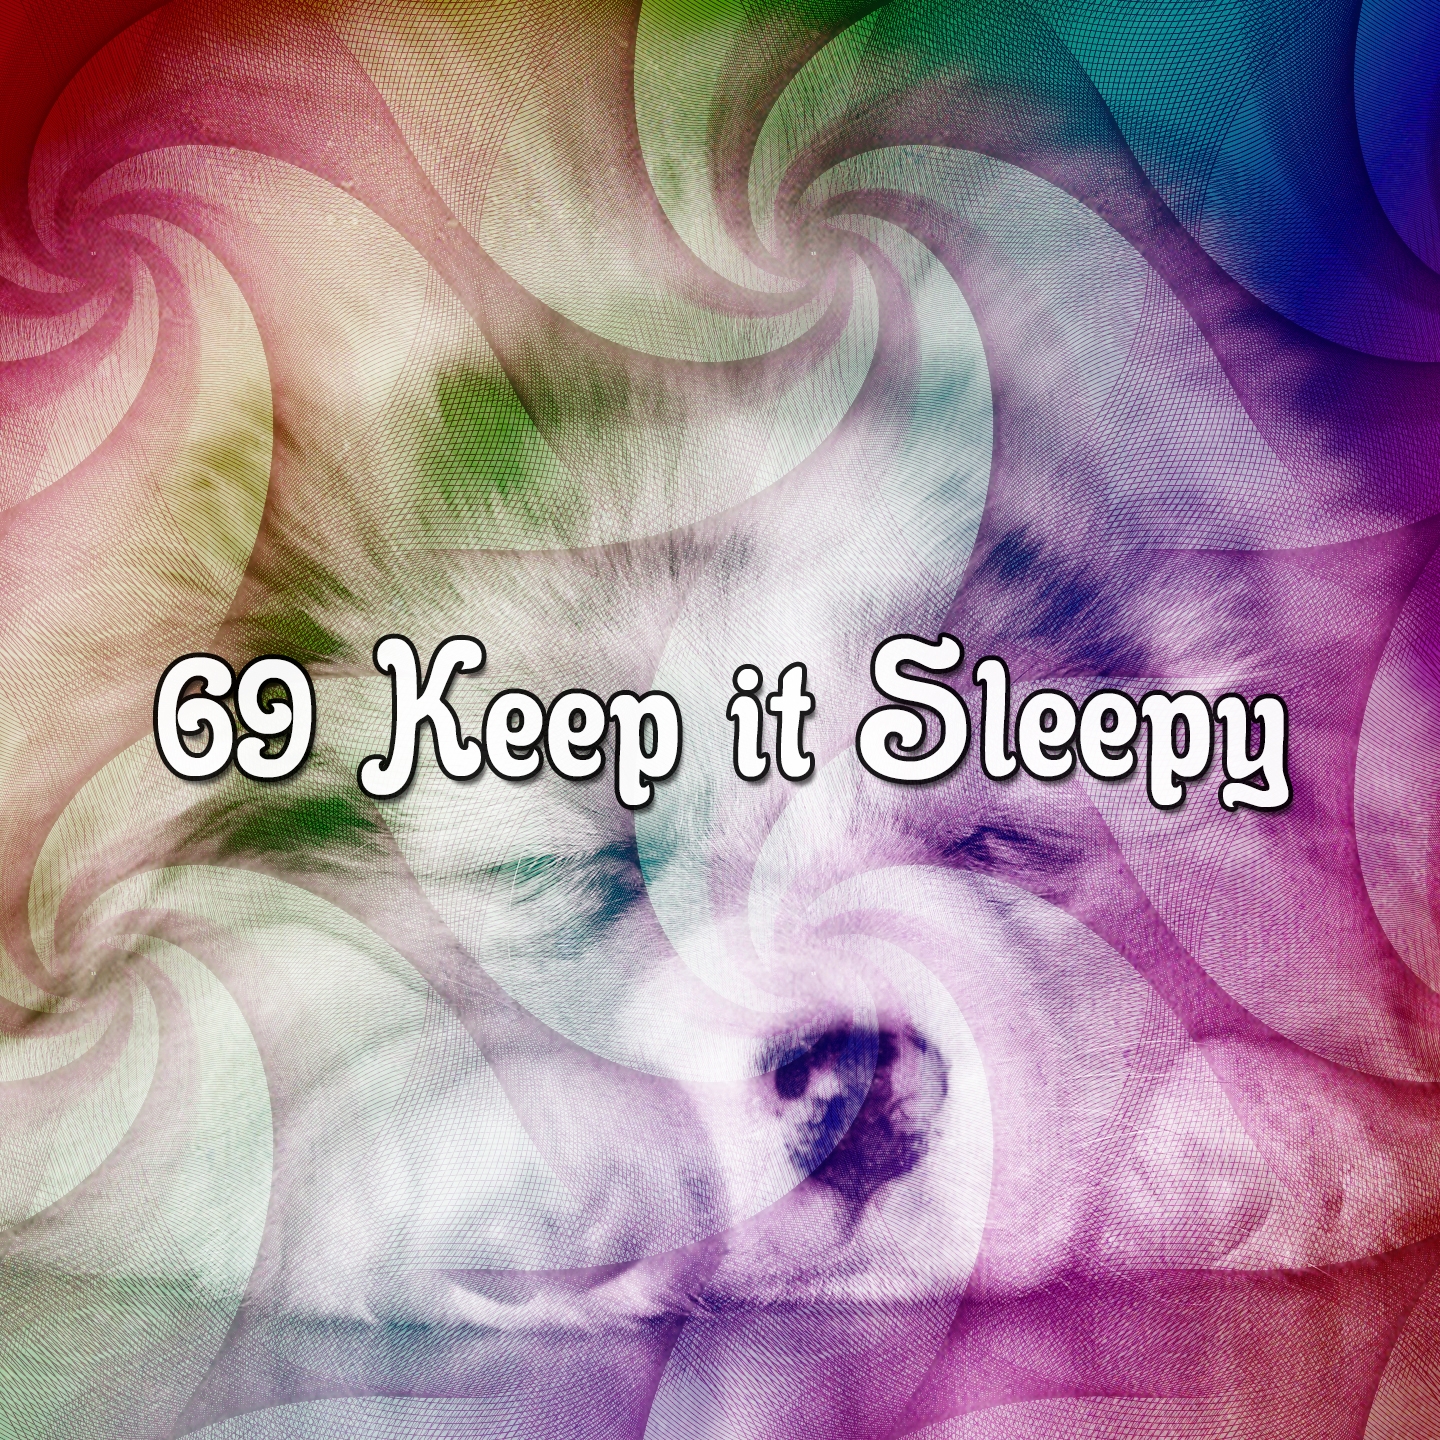 69 Keep it Sleepy